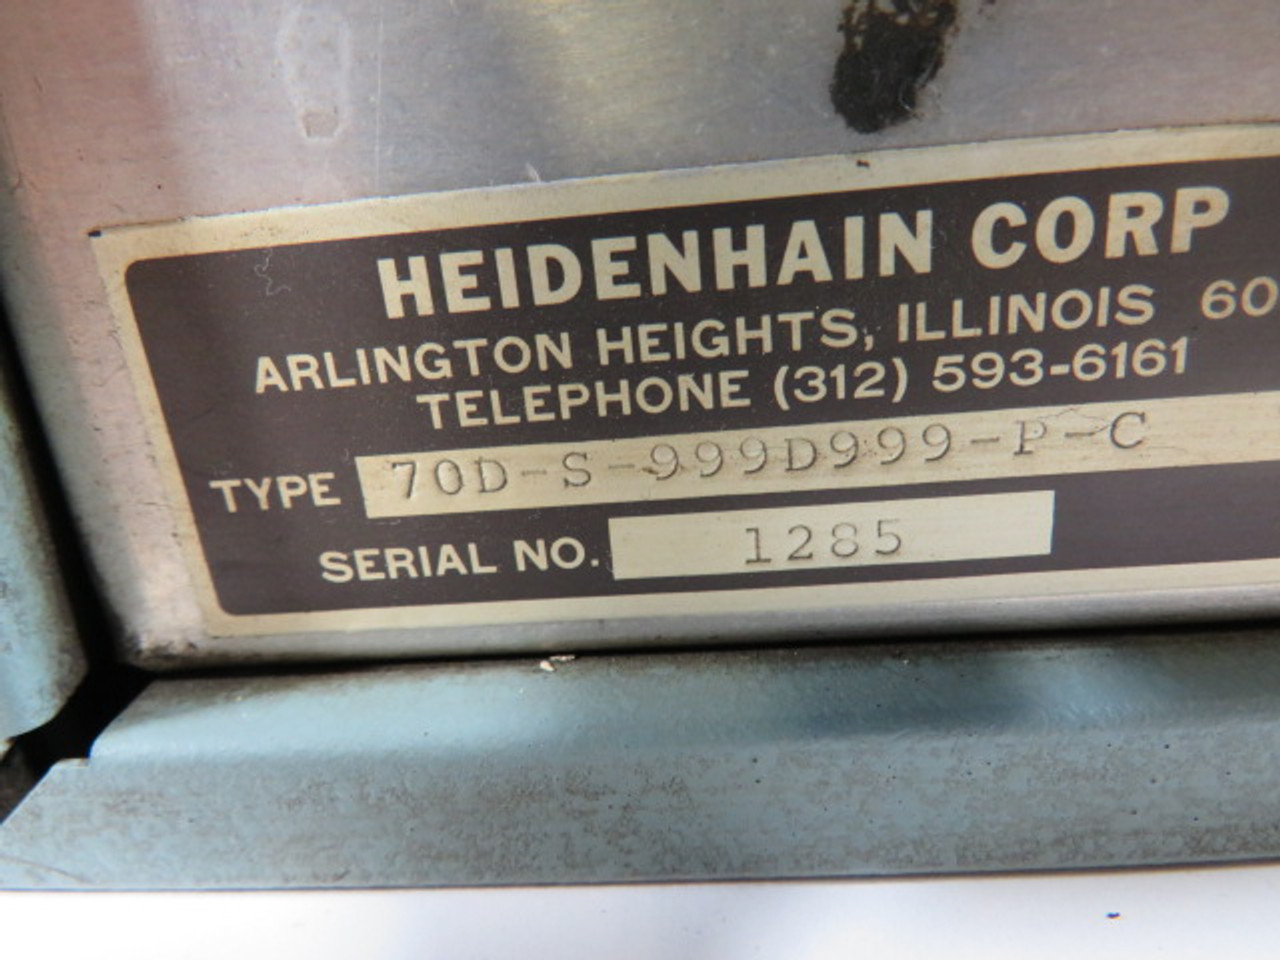 Heidenhain 70D-M-999-D9995-P-C Combined Unit Counting Module *Damage* ! AS IS !